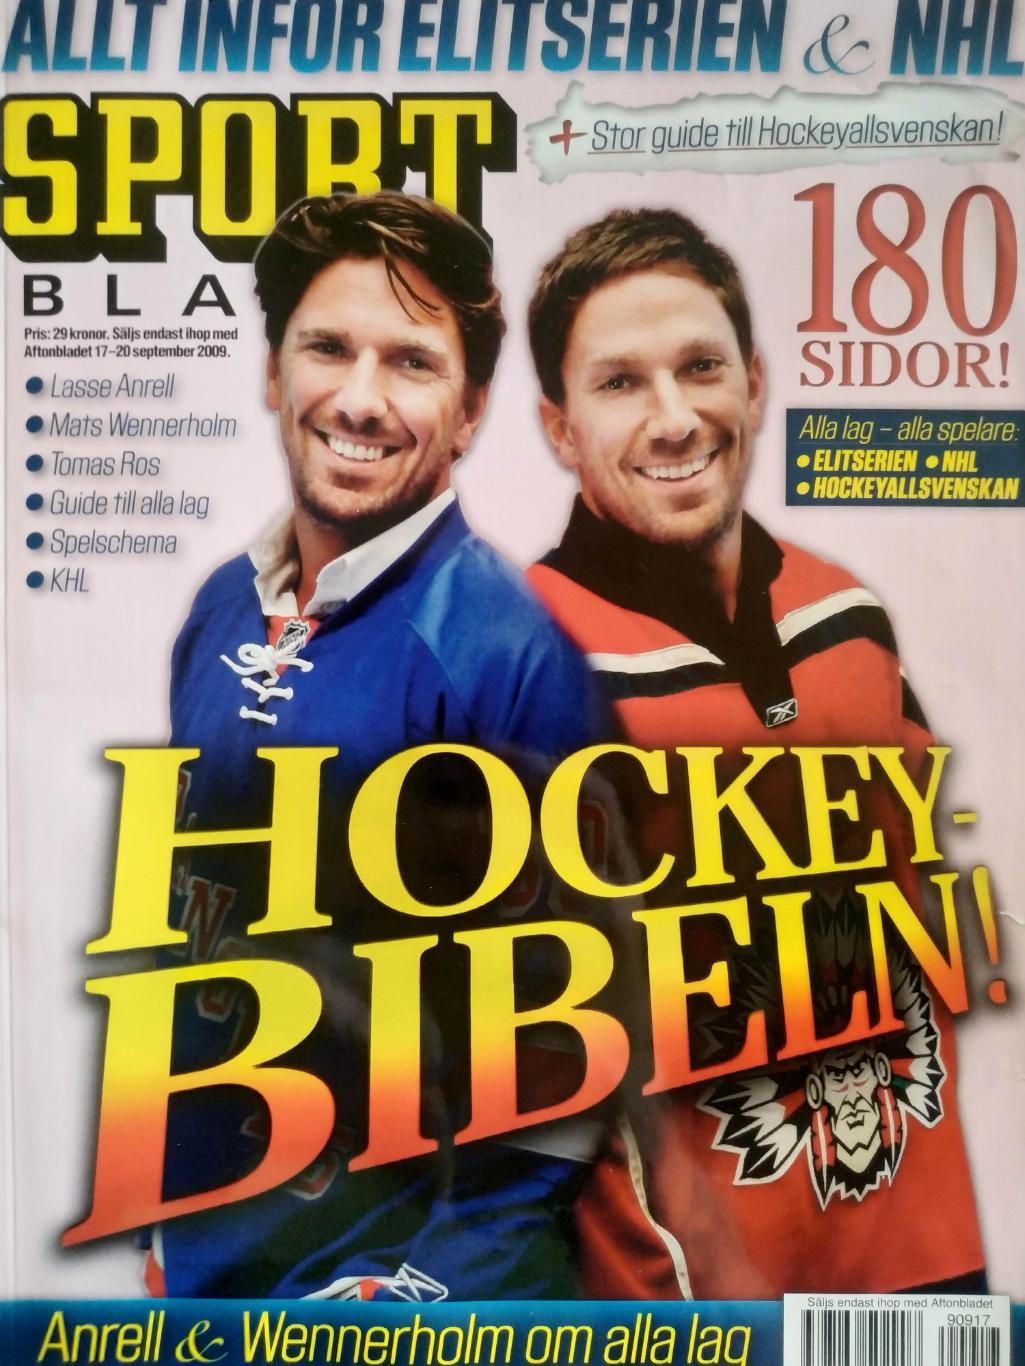 ХОККЕЙ ЖУРНАЛ НХЛ СПОРТ БЛЭДЕТ 17-20 SEPTEMBER 2009 NHL SPORT BLADET SWEDISH